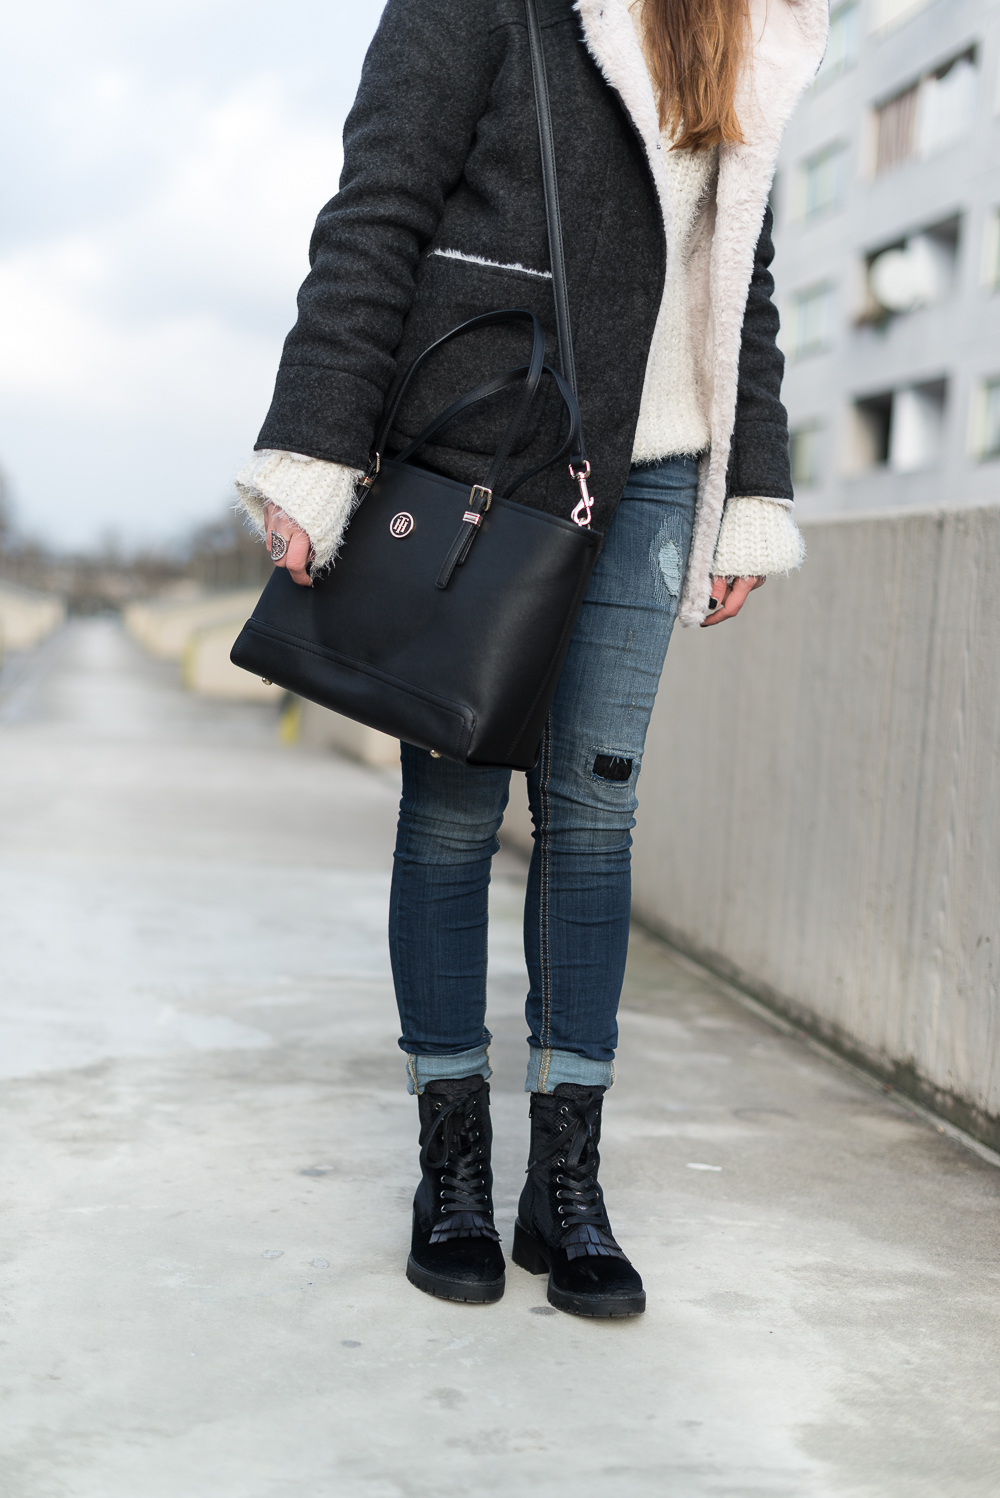 andysparkles-Modeblog Berlin-Grobstrickpullover Outfit